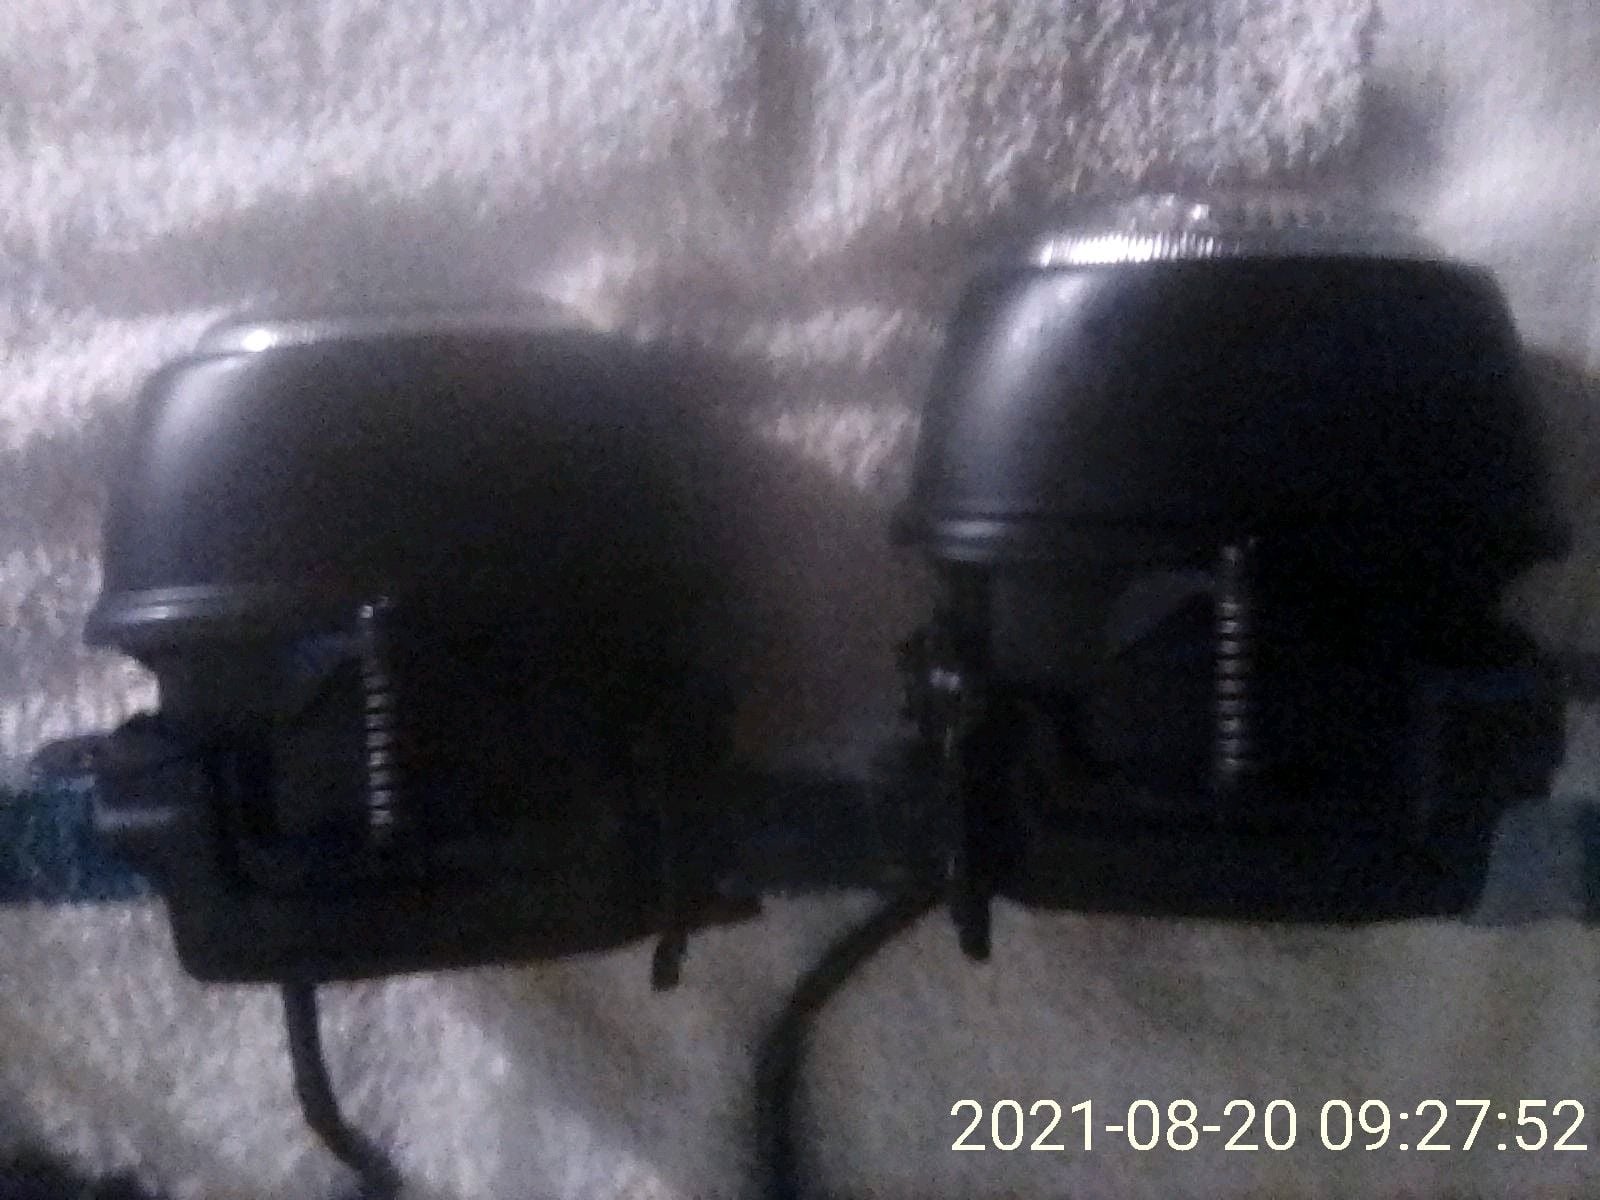 Lights - FD - OEM Fog Lights - Used - 1993 to 2002 Mazda RX-7 - San Jose, CA 95121, United States